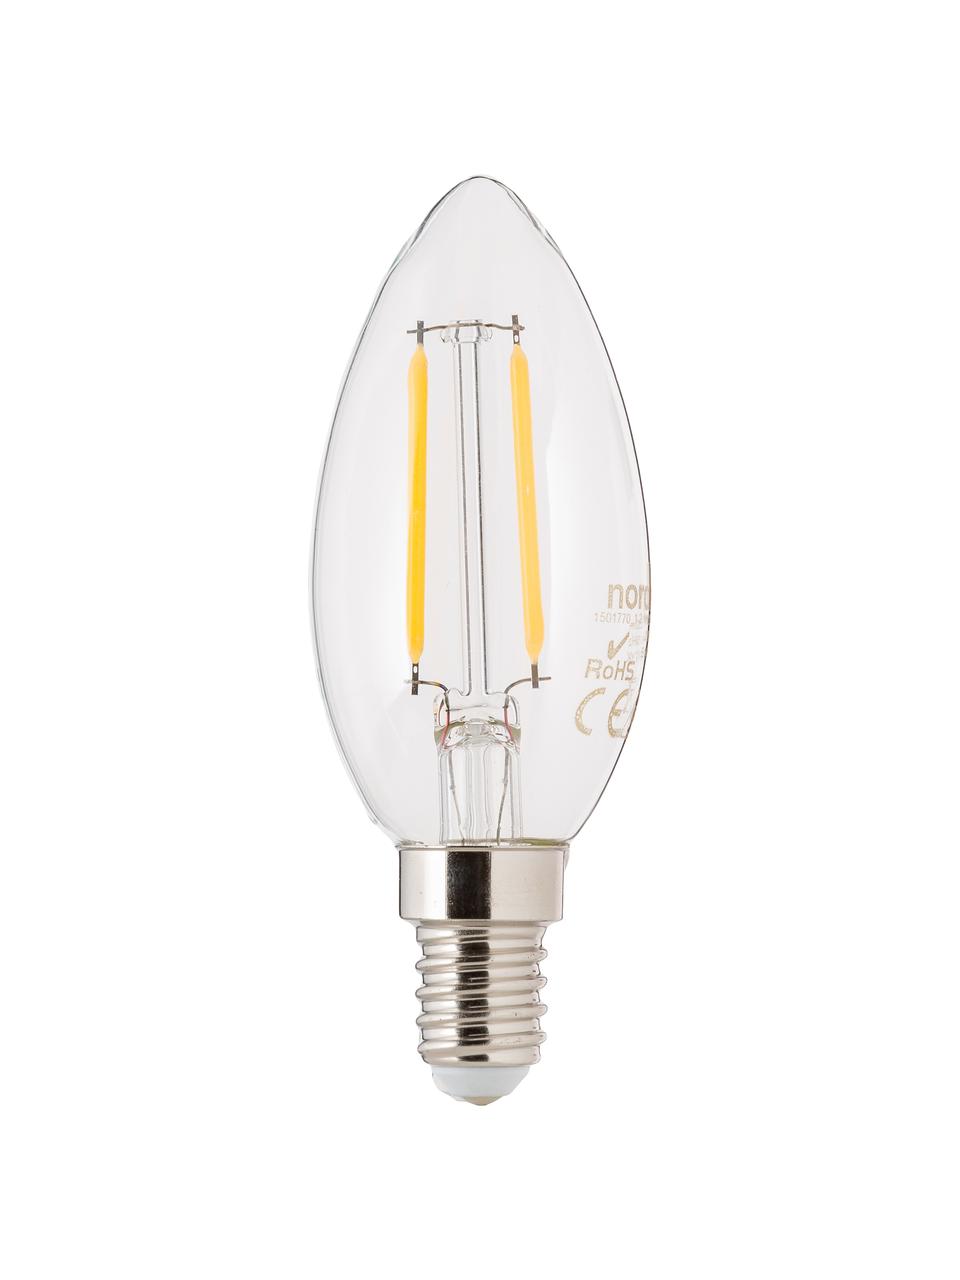 E14 Leuchtmittel, 250lm, warmweiss, 5 Stück, Leuchtmittelschirm: Glas, Leuchtmittelfassung: Aluminium, Transparent, Ø 4 x H 10 cm